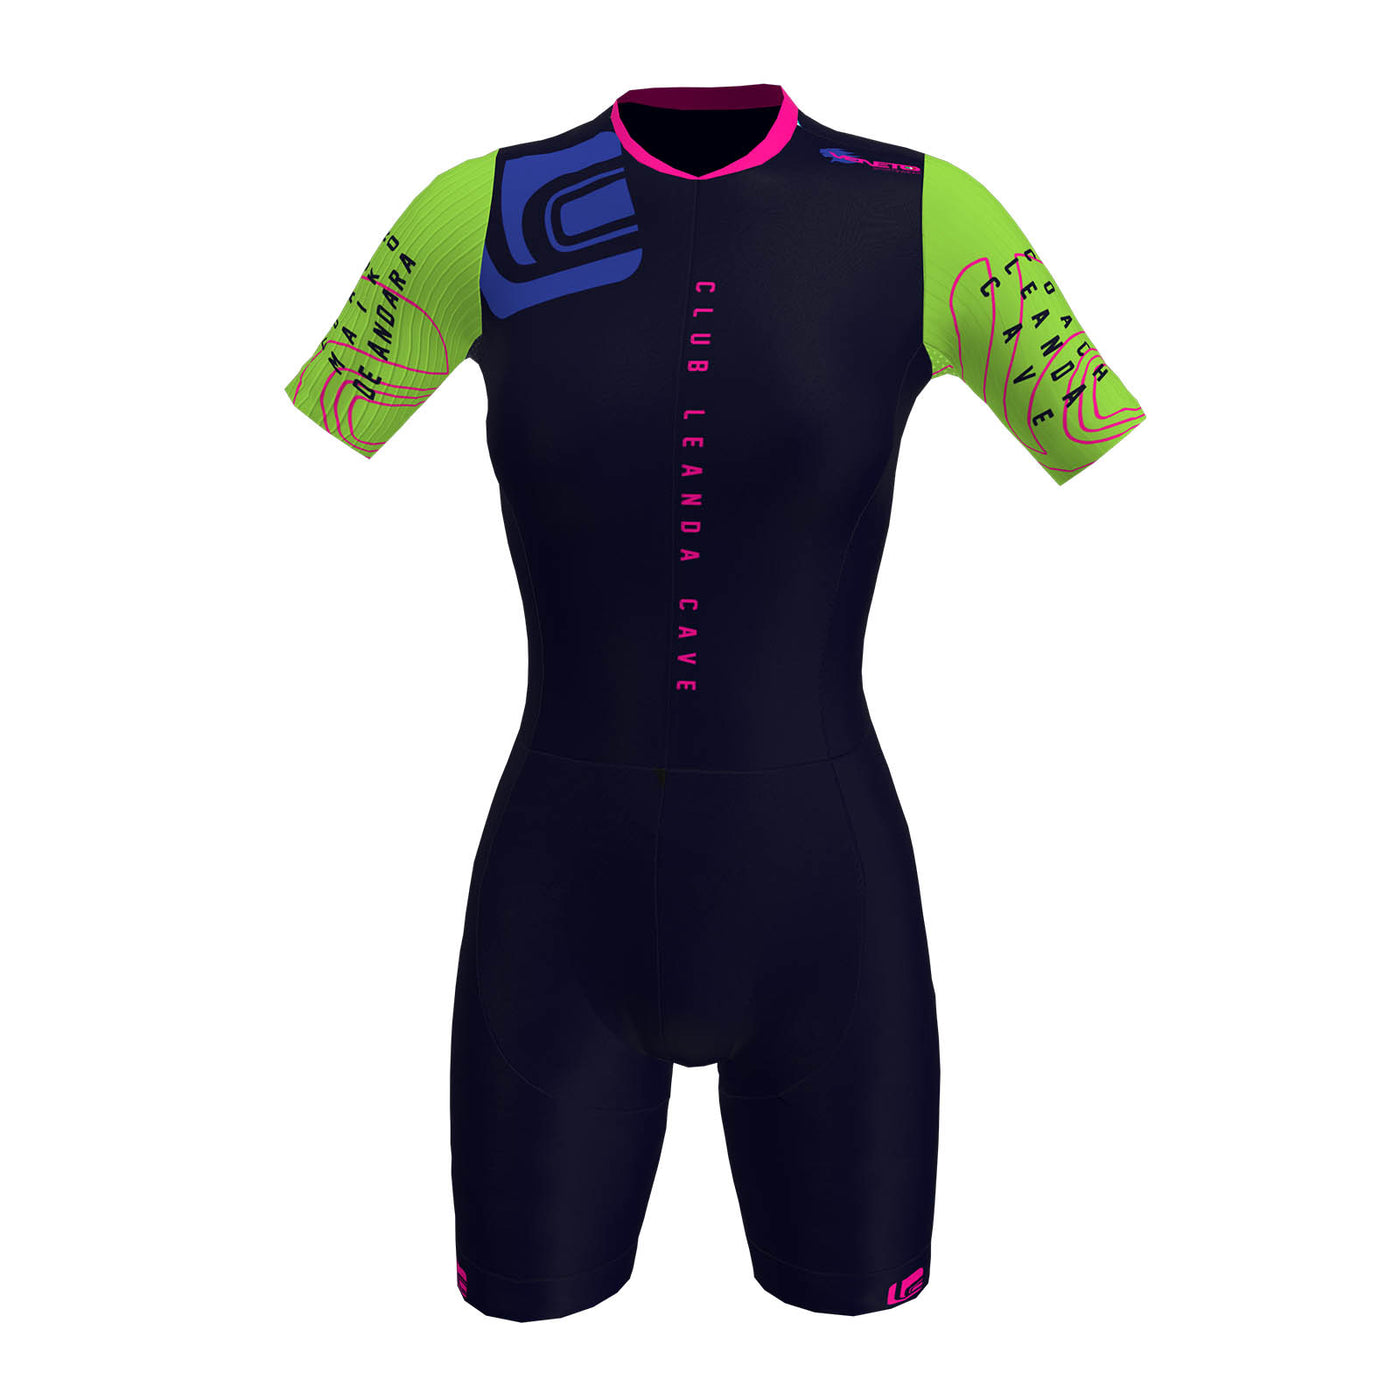 CLUB LEANDA CAVE - Triathlon Body with sleeves WOMEN's